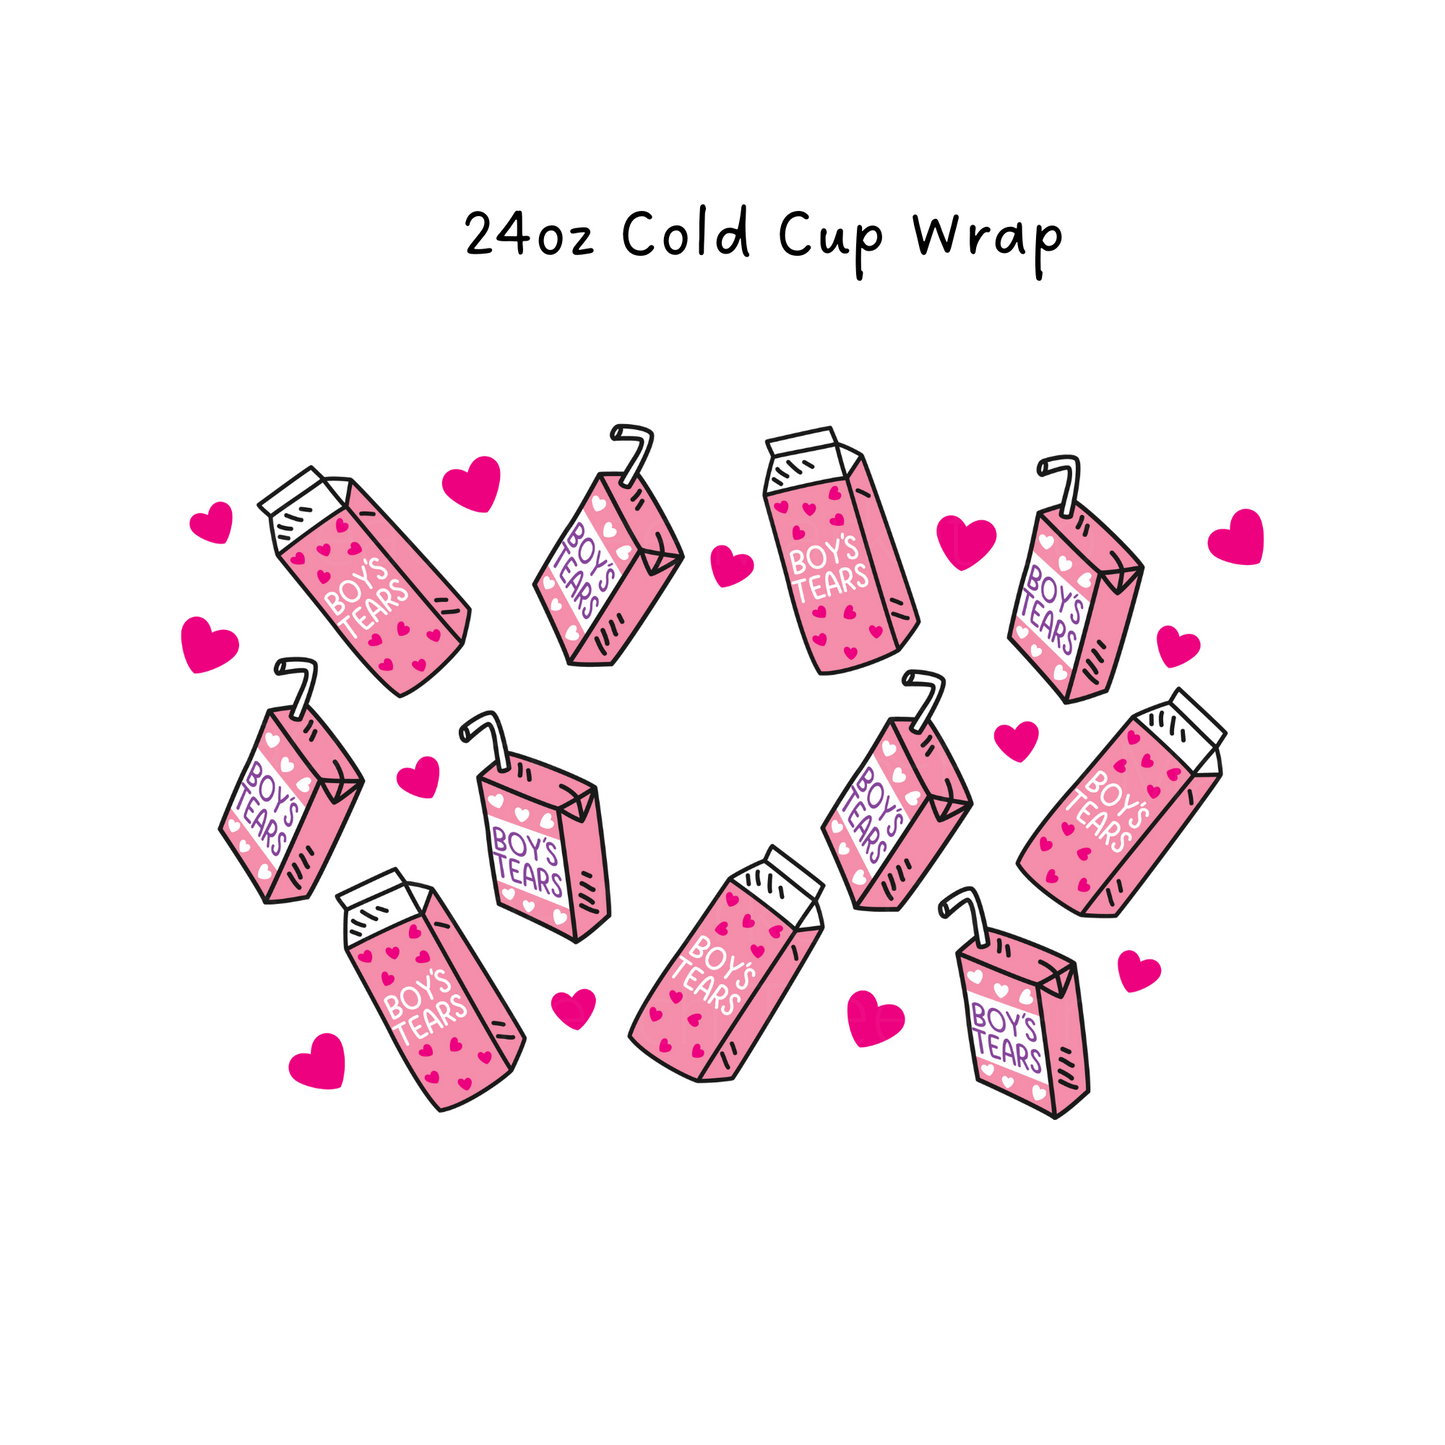 Boys Tears 24 OZ Cold Cup Wrap